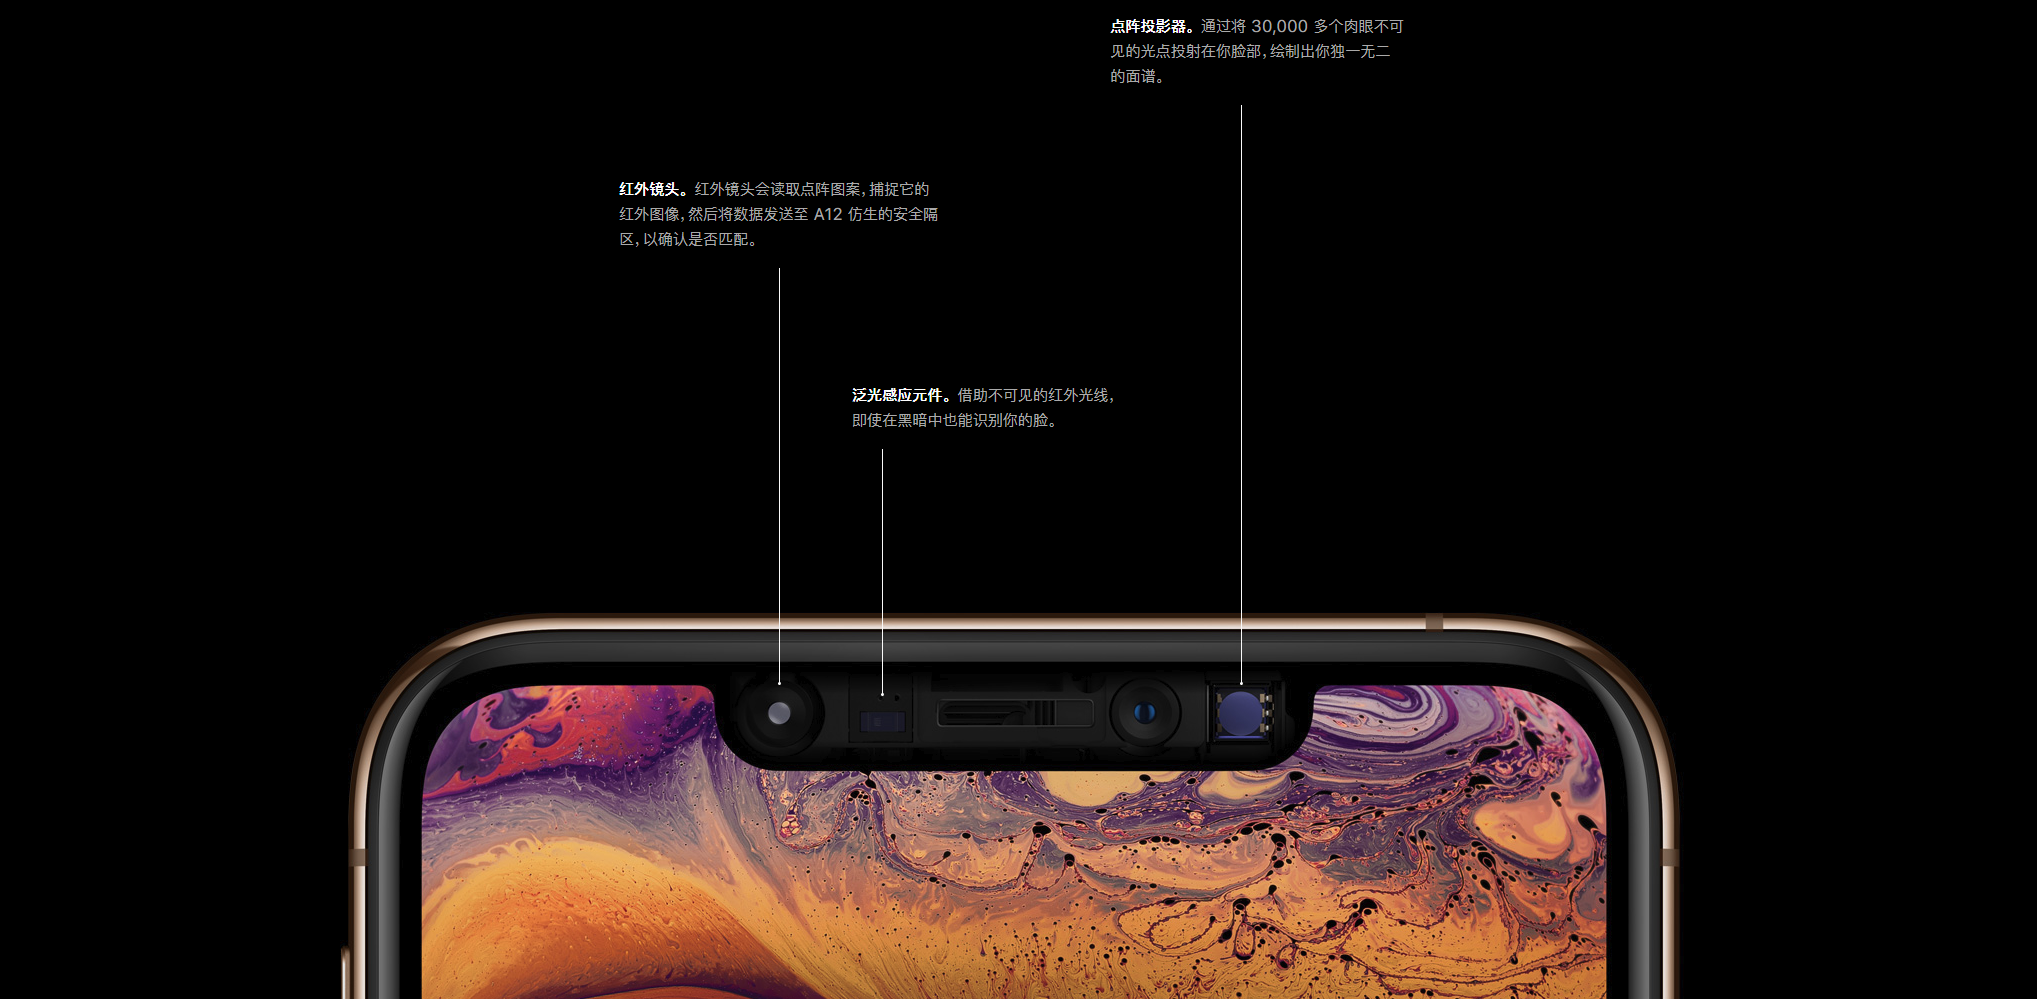 苹果推出中国特色版 iPhone 是怎么回事？发布的可能性大吗？